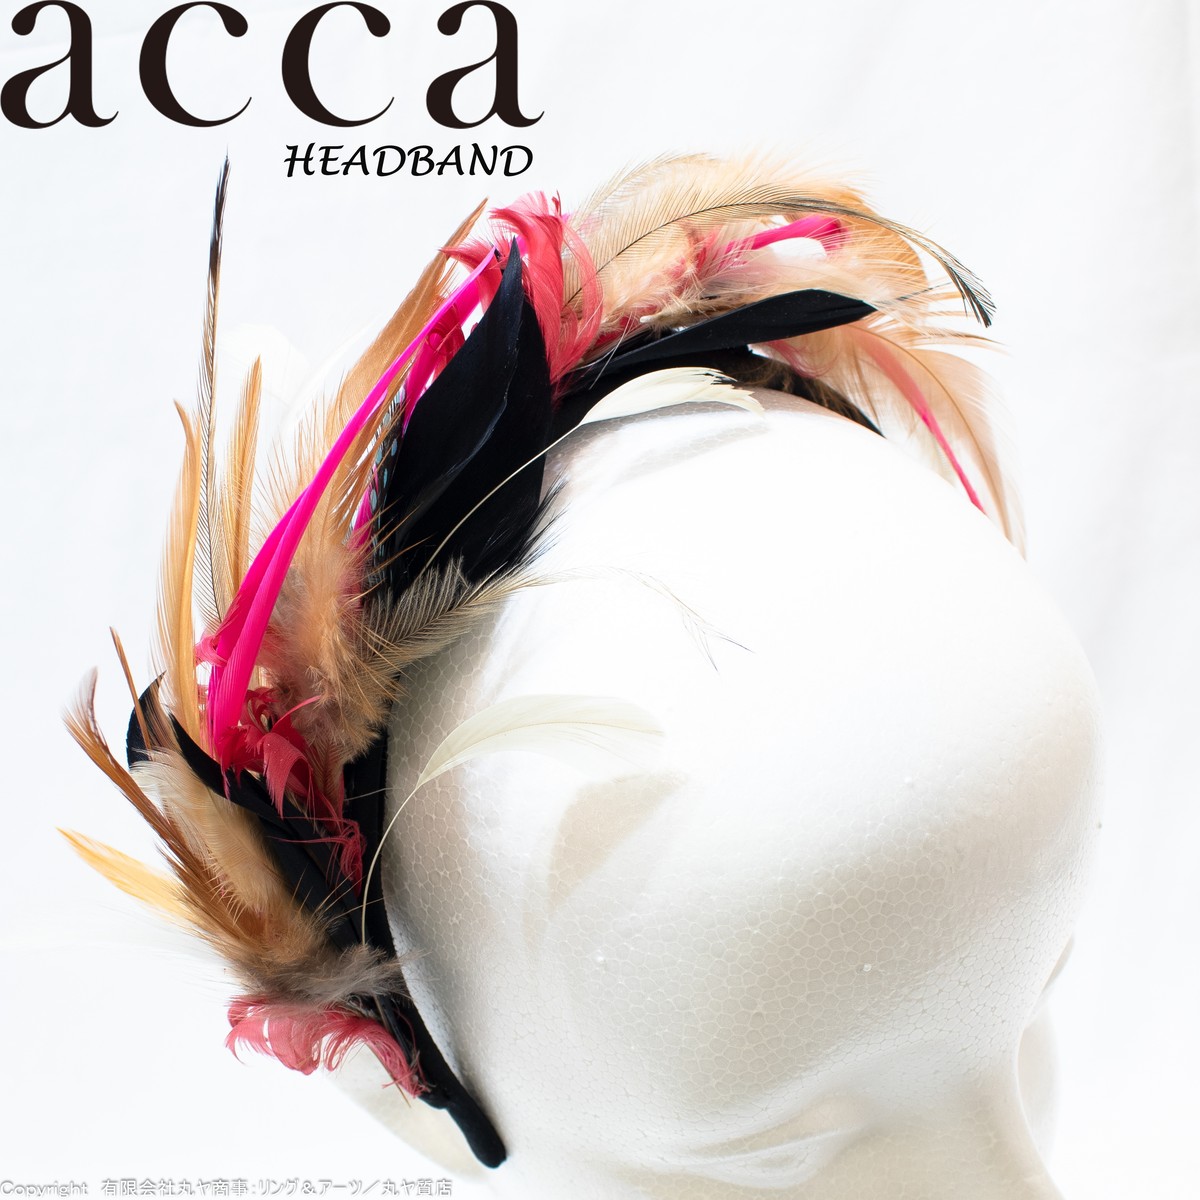 アッカ Acca カチューシャ ヘアバンド ヘアドレス ヘアアクセサリー Hairband Hairdress 有限会社丸ヤ商事 丸ヤ質店 リング アーツ オフィシャルサイト